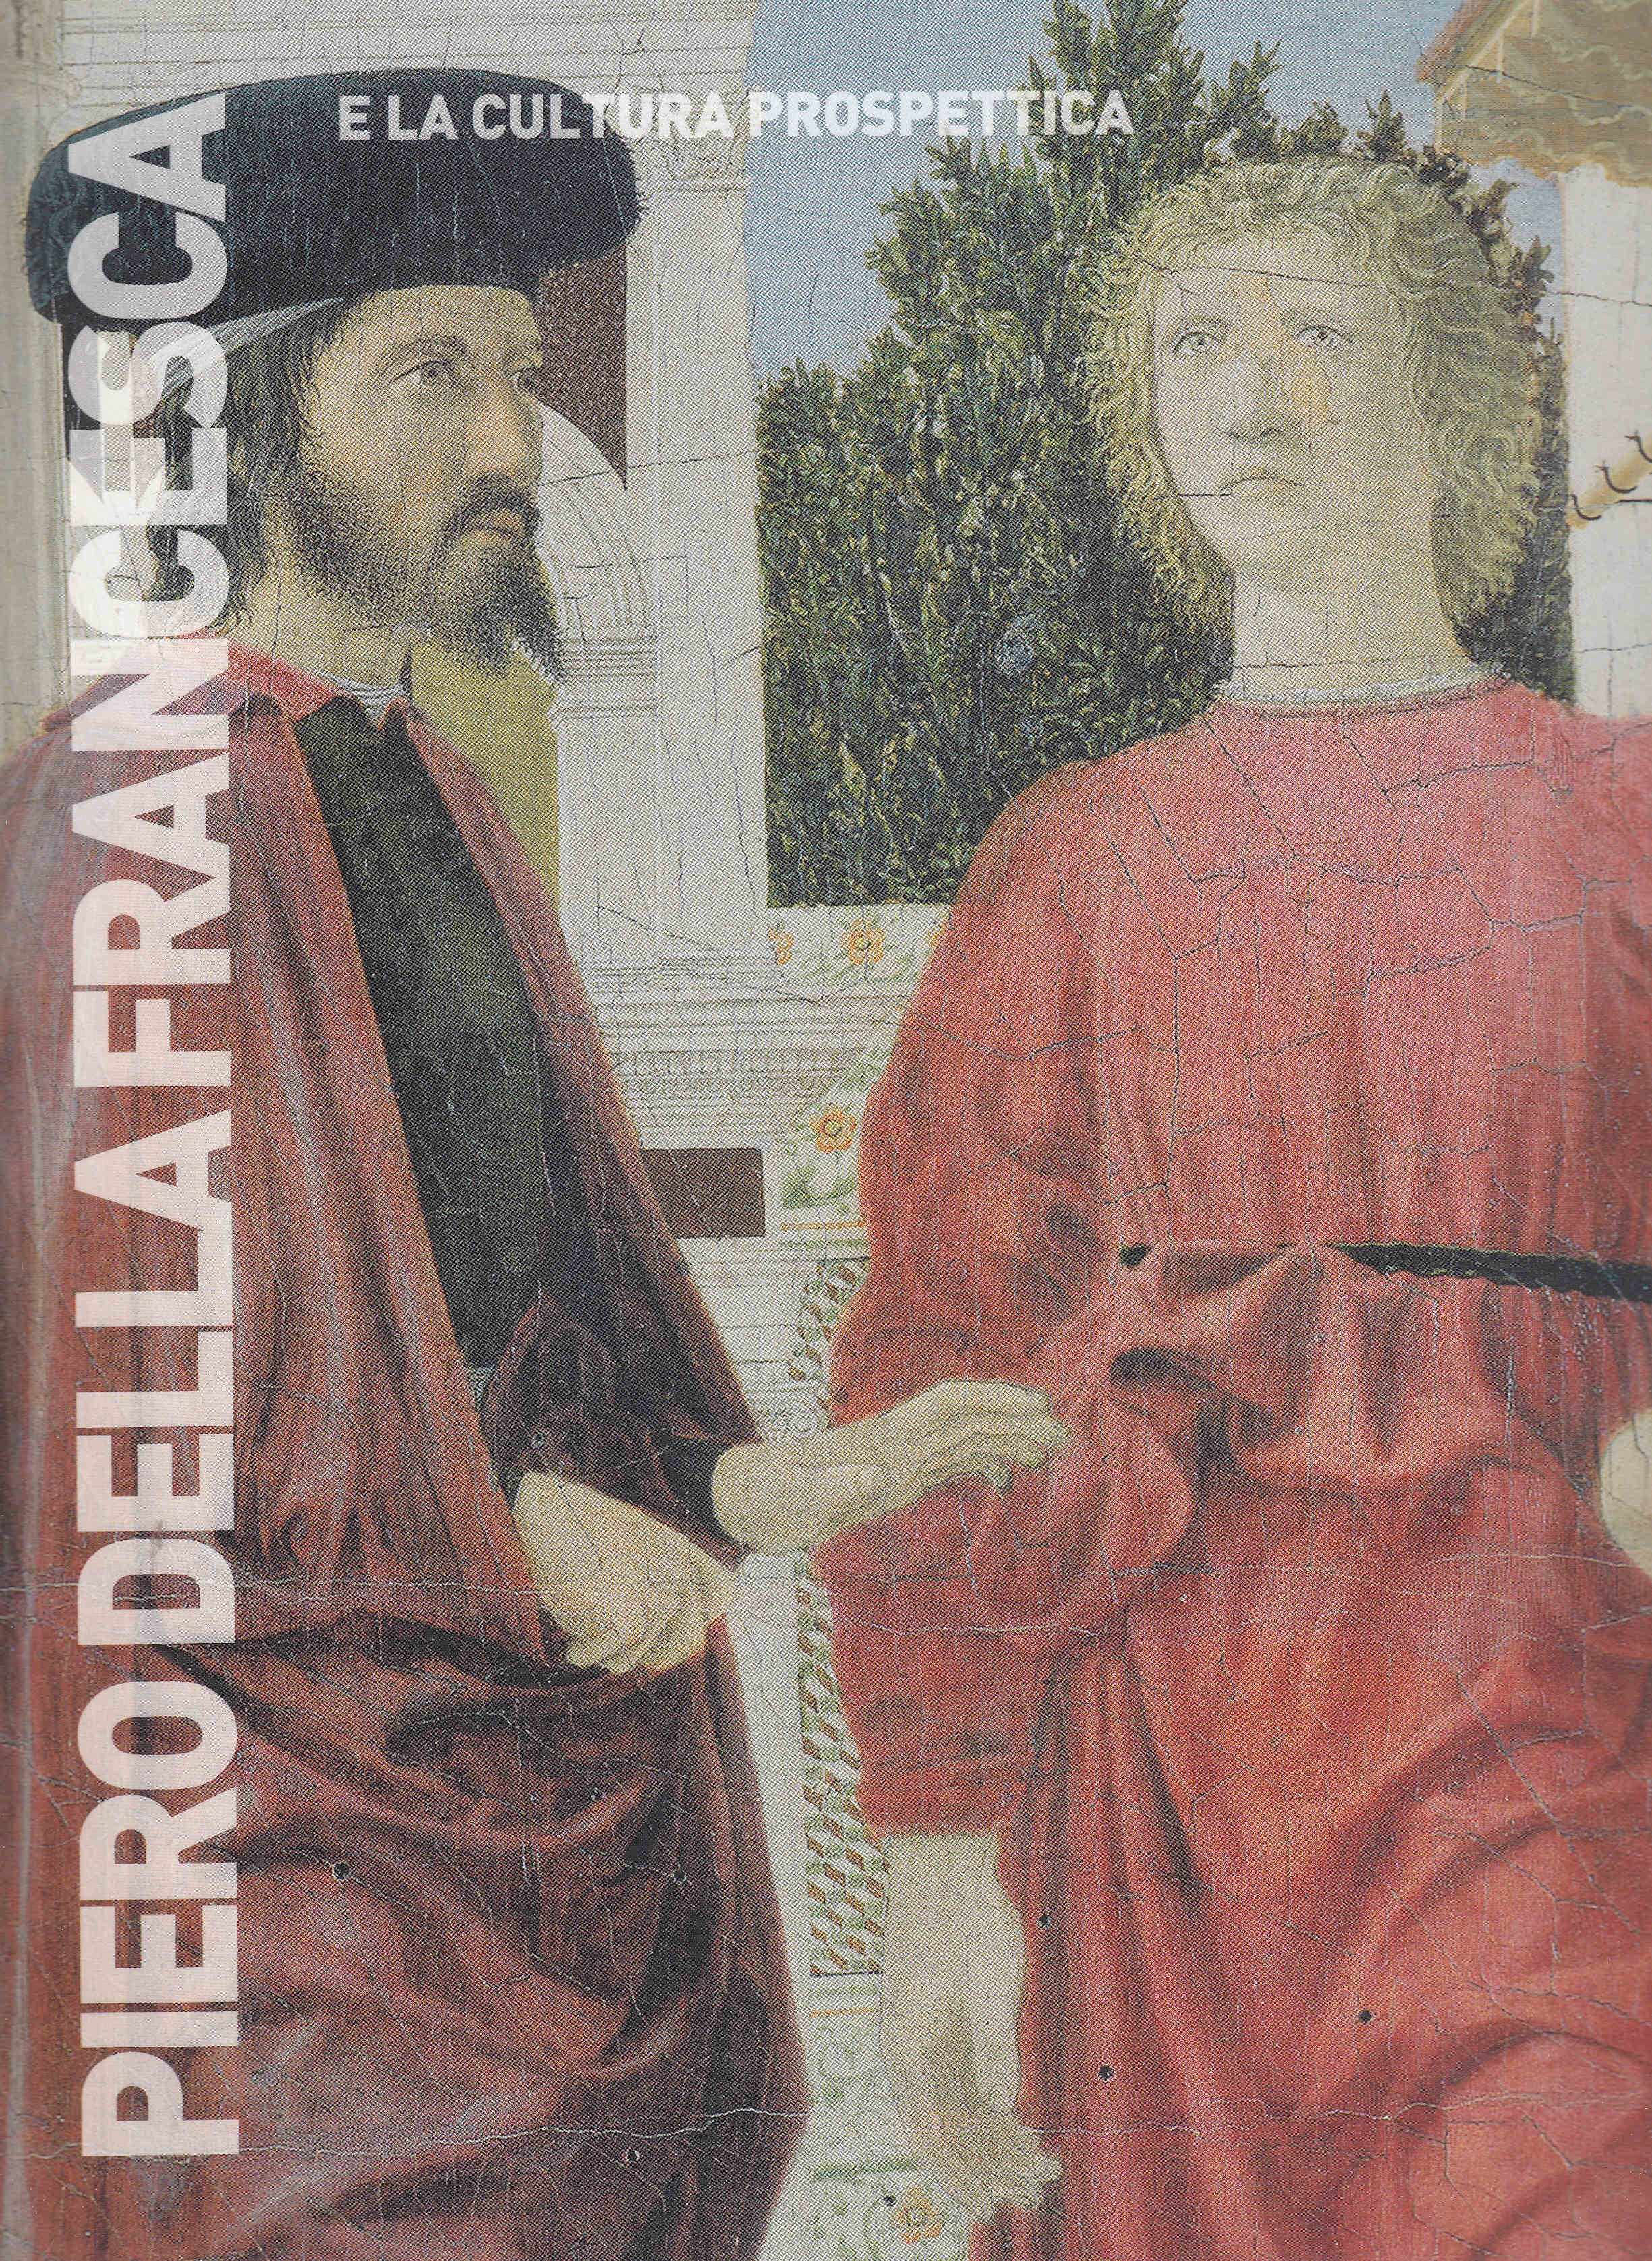 Titolo: Piero Della Francesca e la cultura prospettica Autore: AA.VV. Editore: E-ducation.it, 2007 Firenze